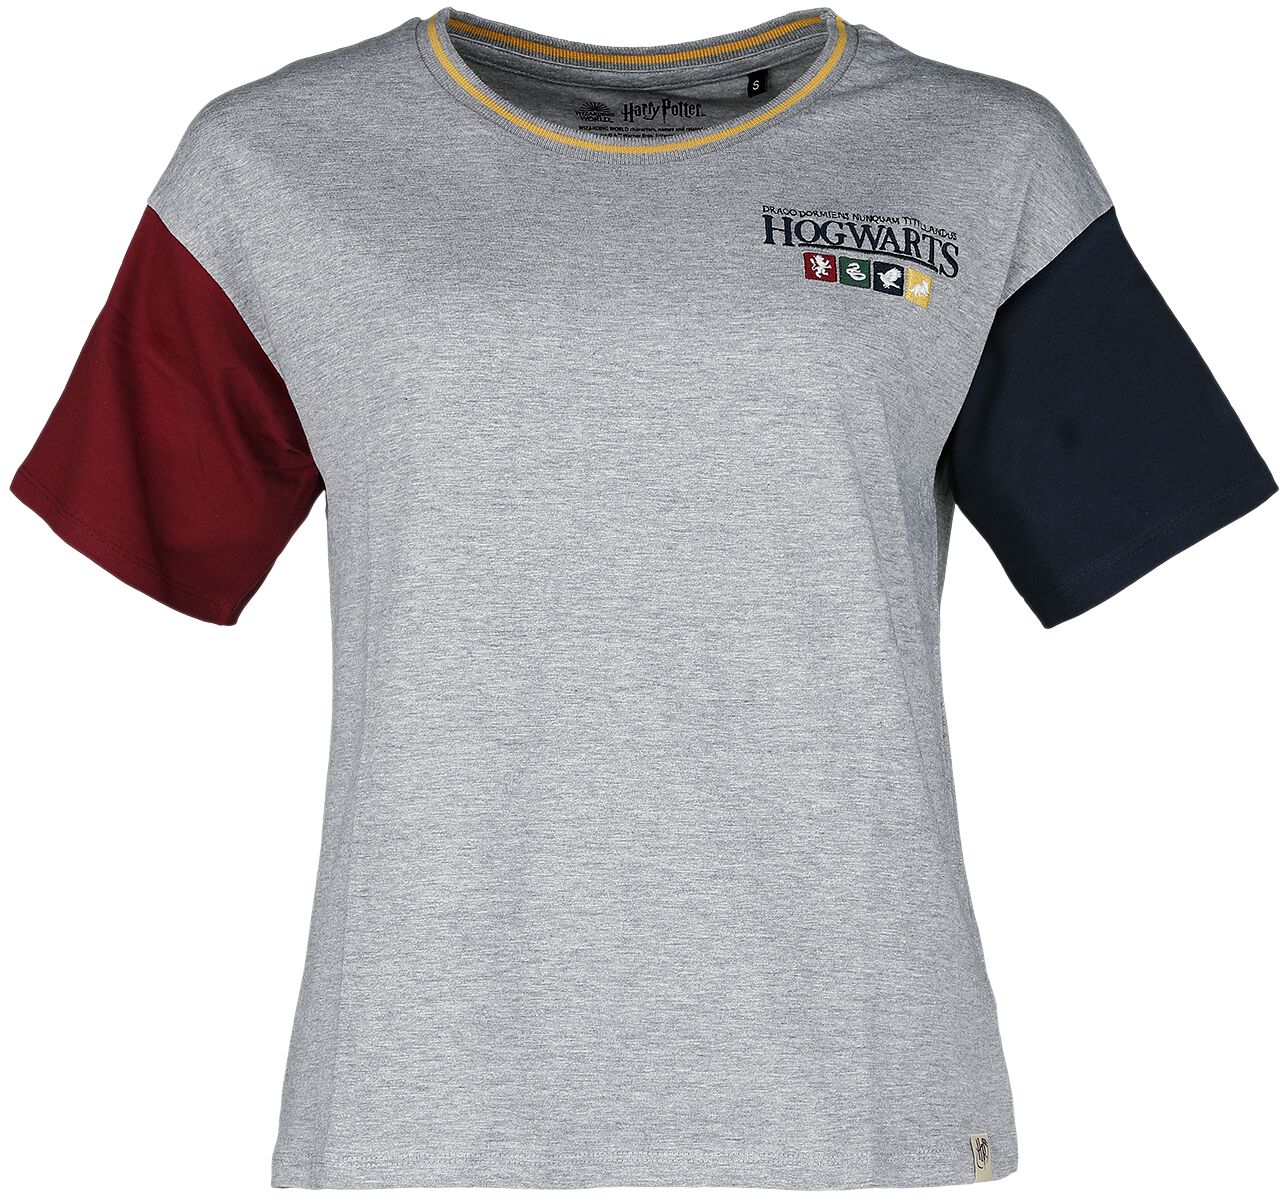 T-Shirt Manches courtes de Harry Potter - Emblème Poudlard - S à L - pour Femme - gris